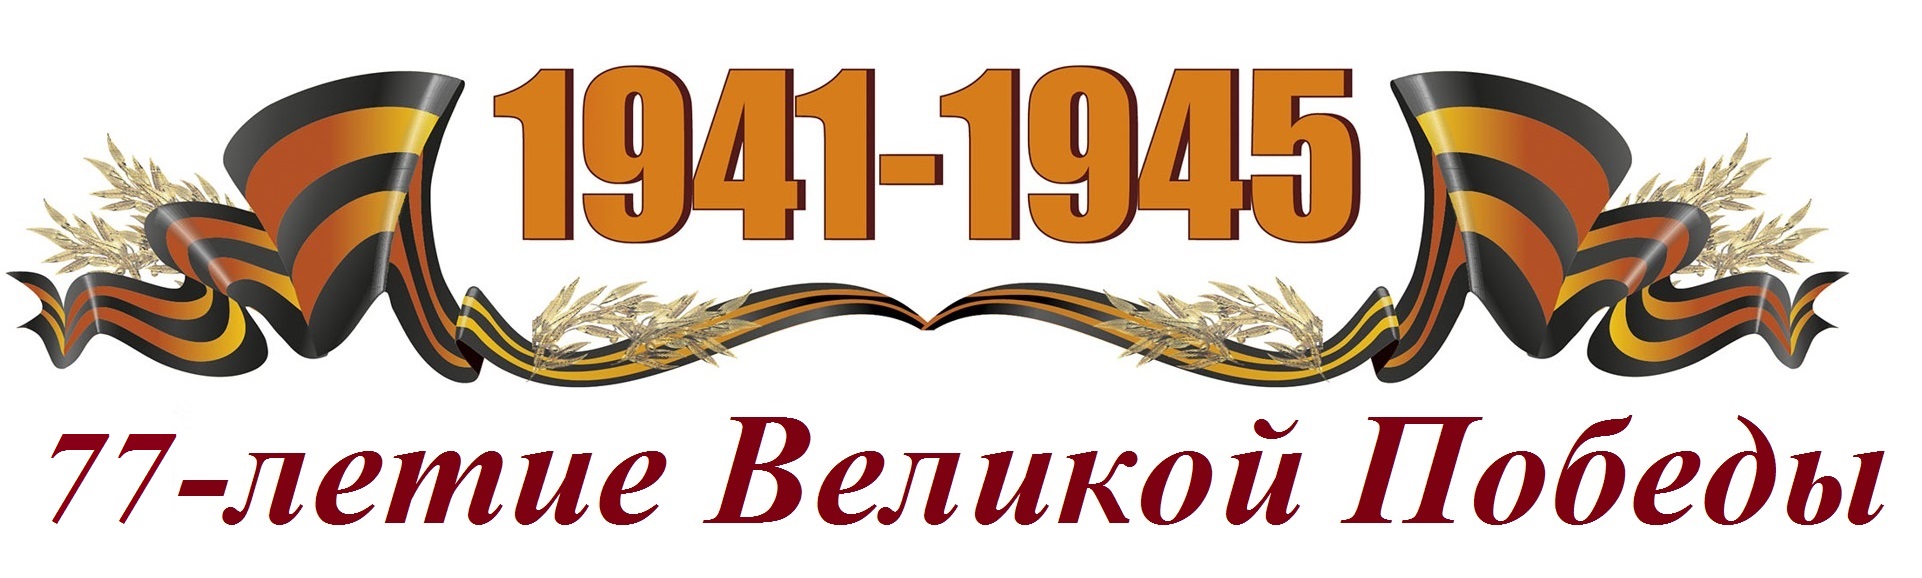 Георгиевская лента с надписью 1941-1945